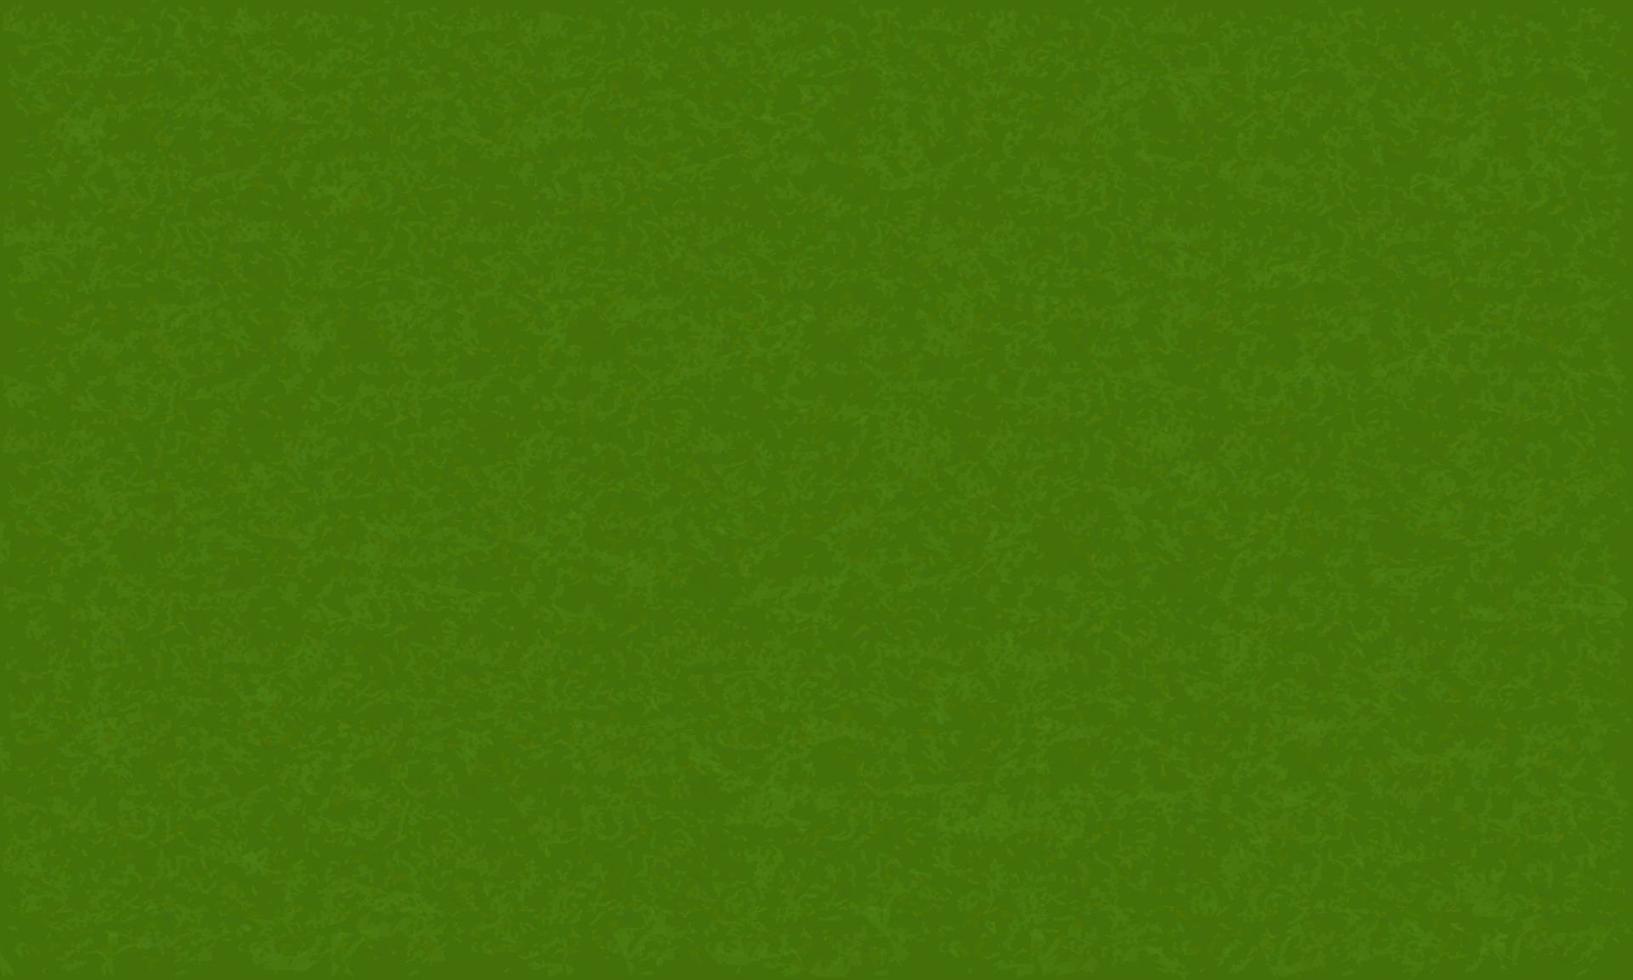 textura de grama verde para segundo plano. vetor. vetor